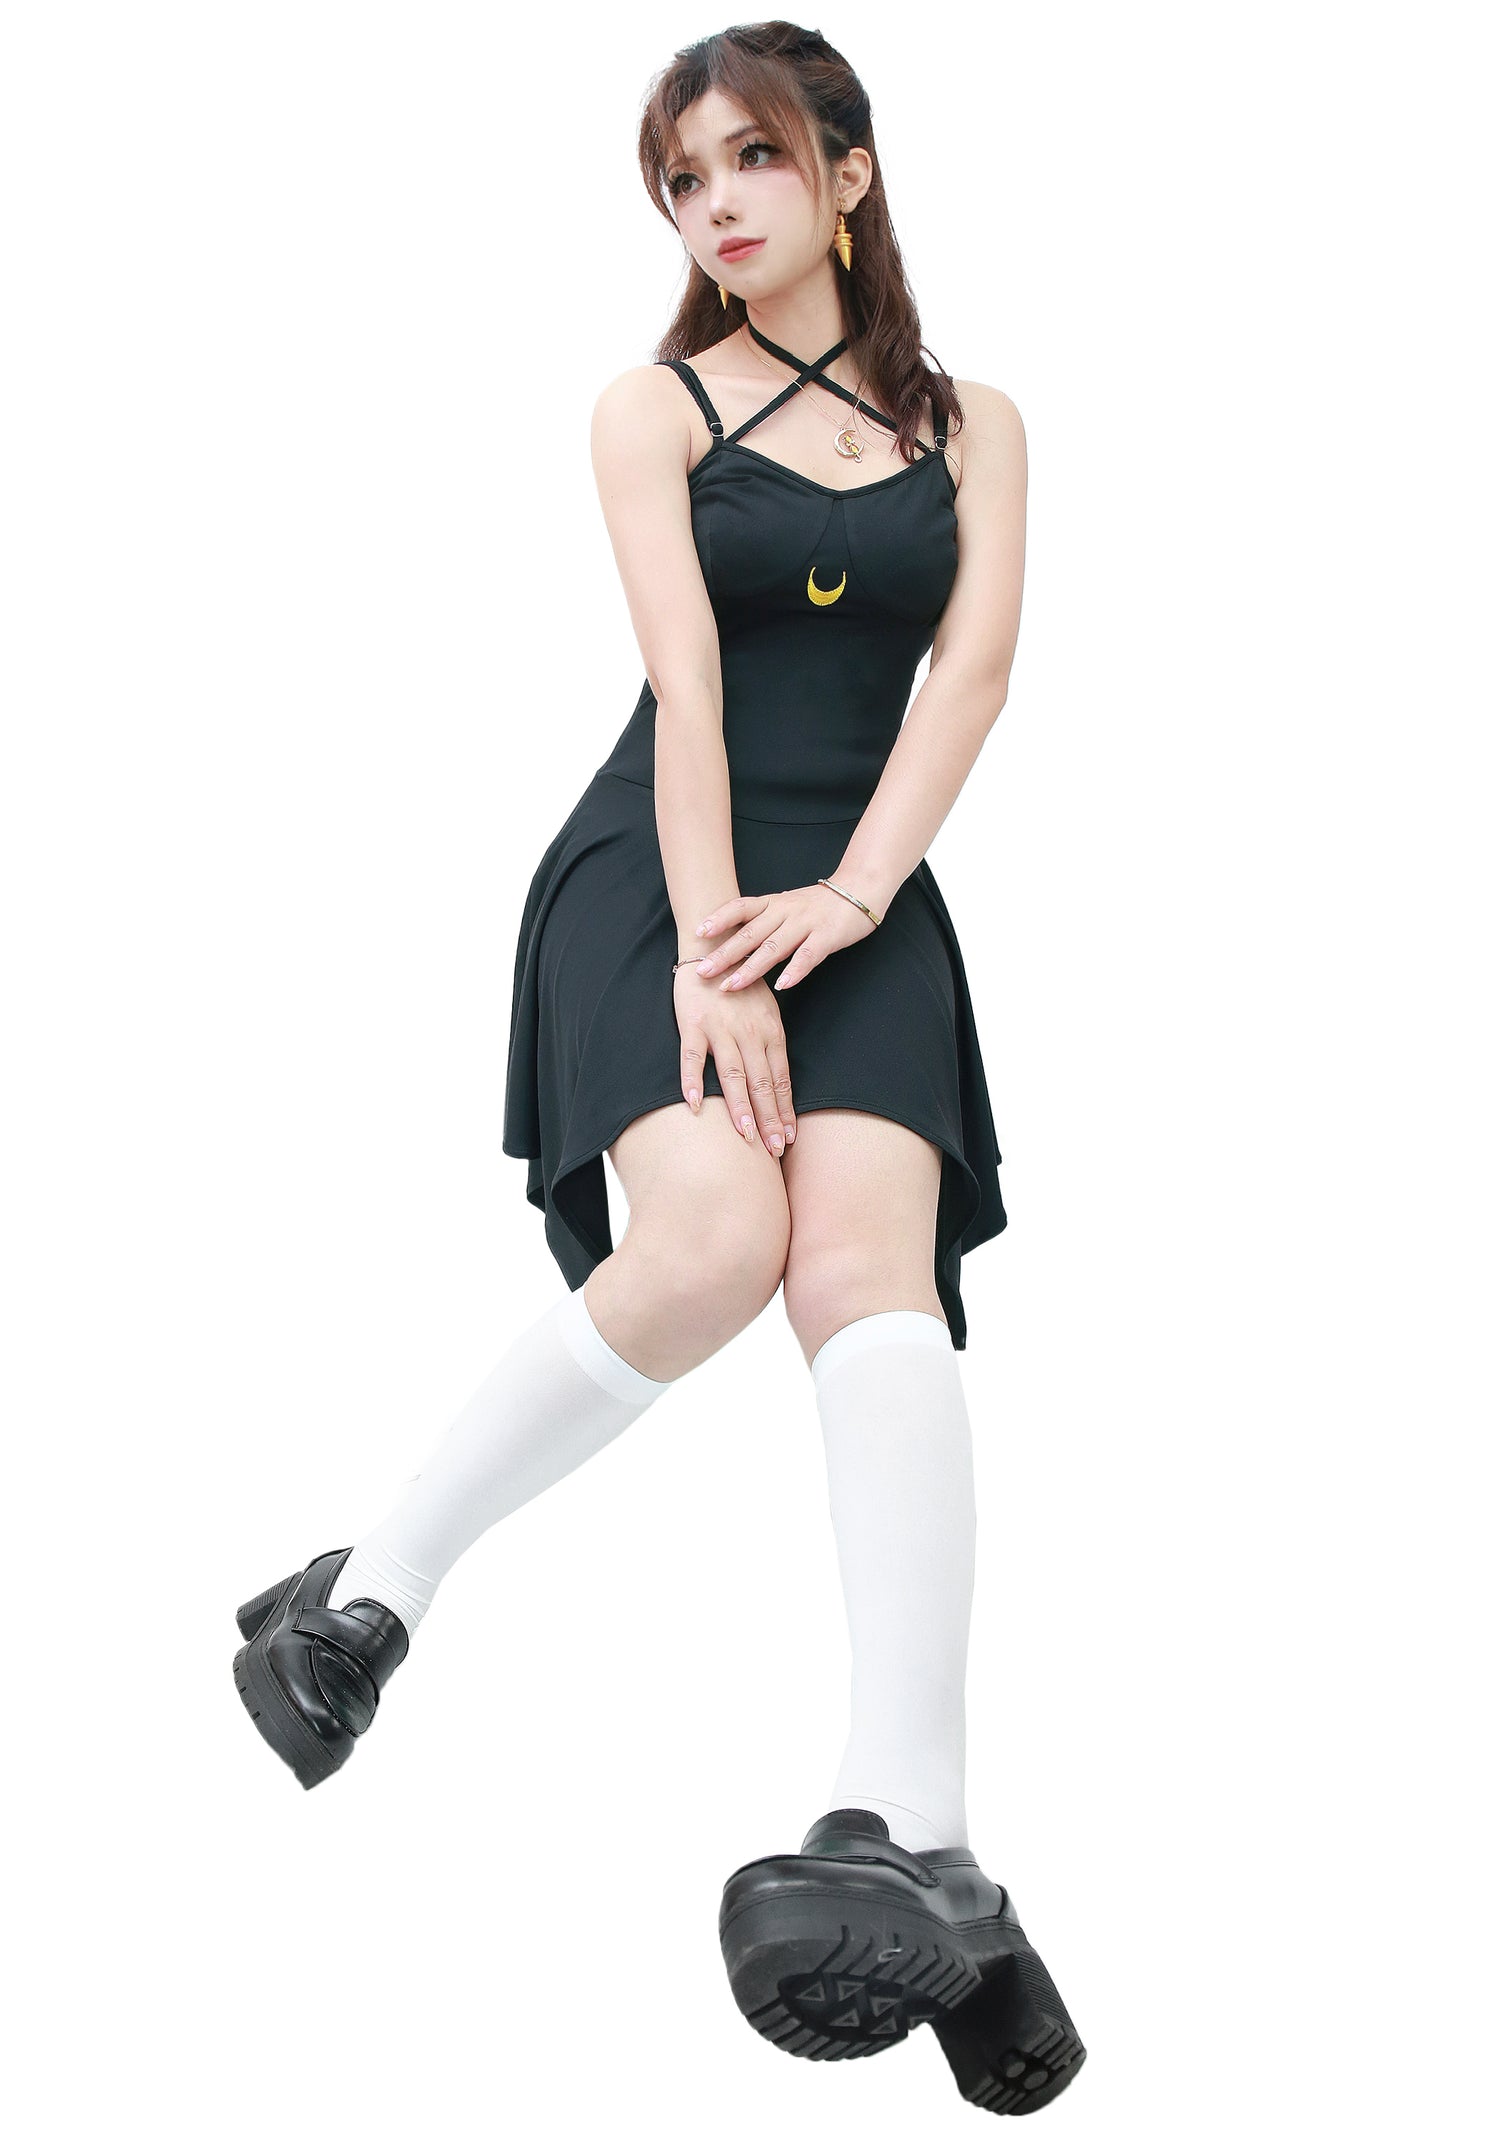 DAZCOS Femme Taille US Sailor Luna Cosplay Costume Noir Cravate Dos Slip Robe pour la Fête